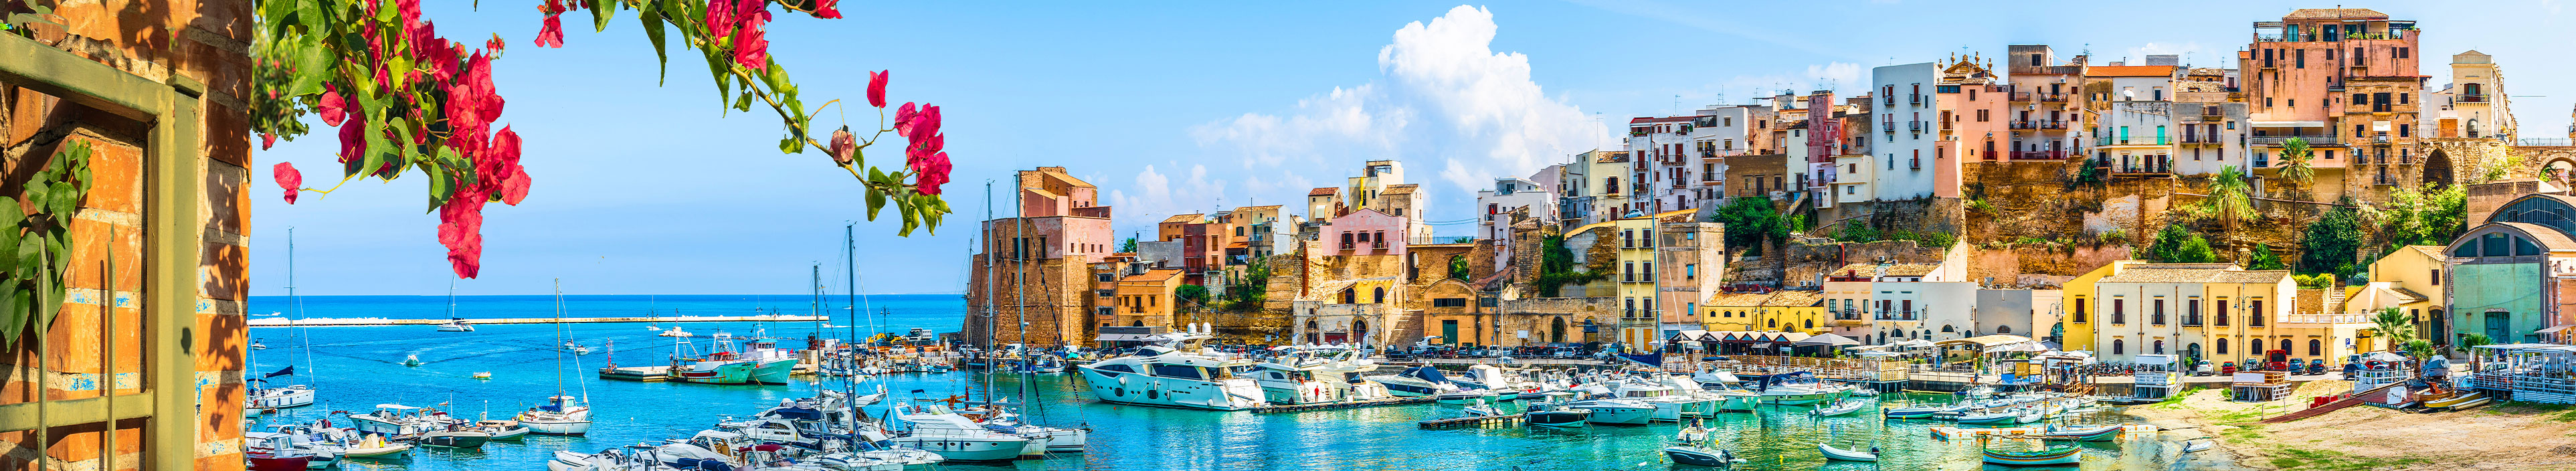 Urlaub Sizilien. Bunte Häuser mit Blick auf den Hafen. 